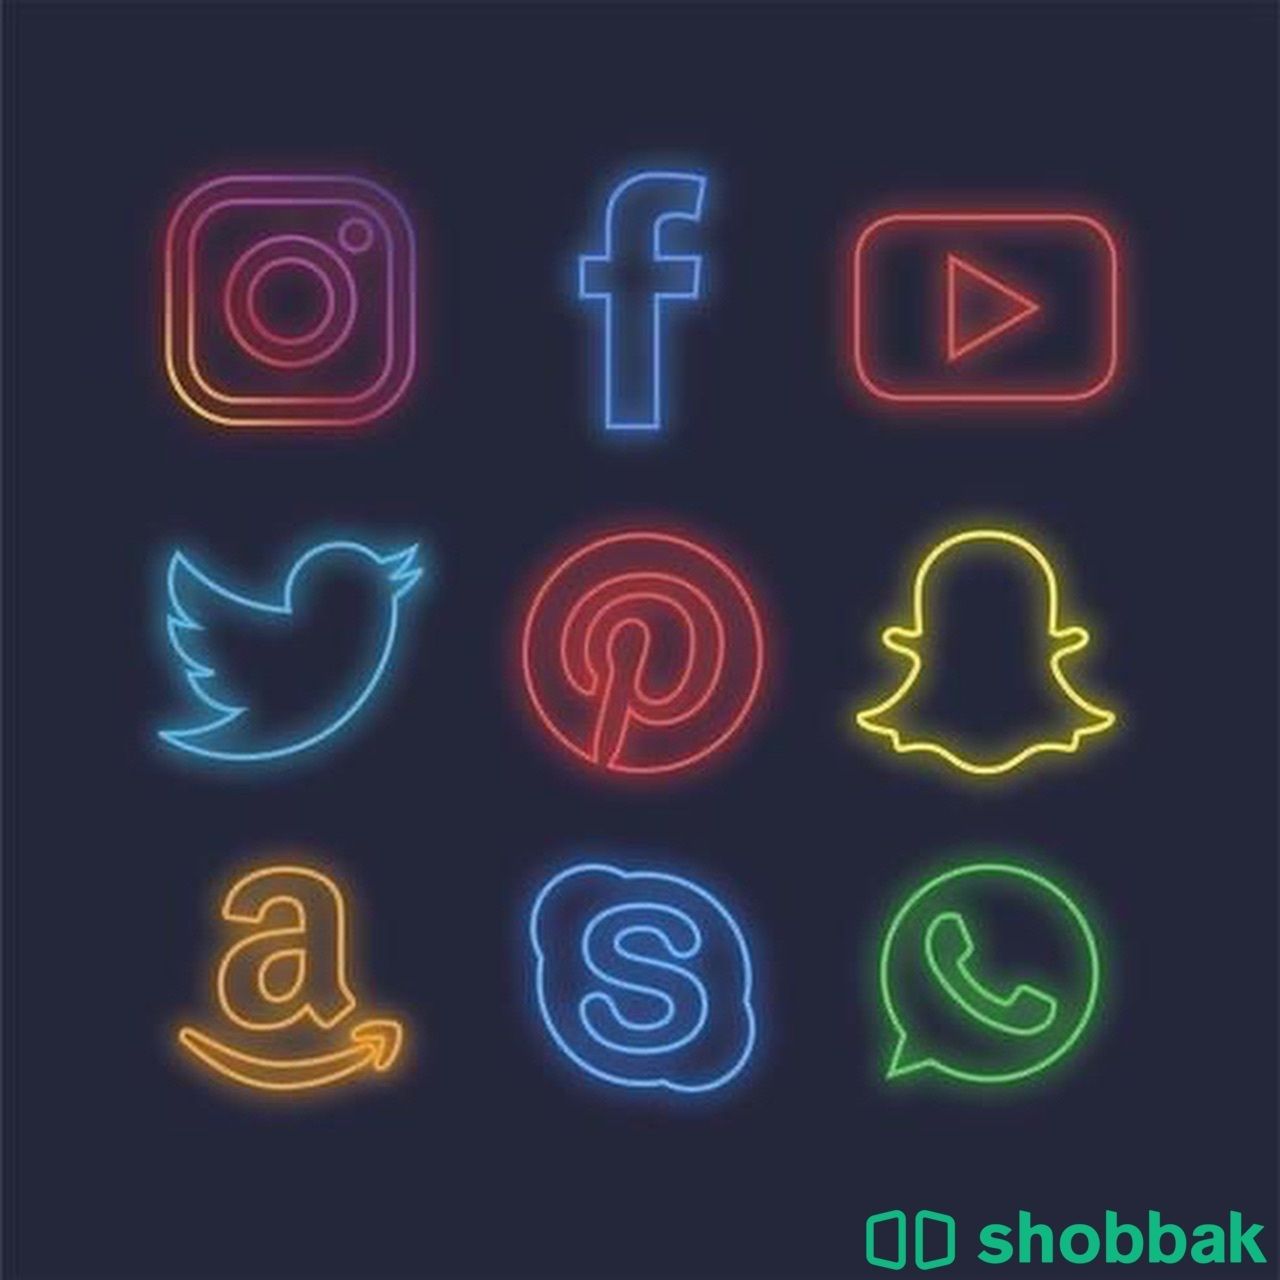 خدمات دعم سوشل ميديا  Shobbak Saudi Arabia